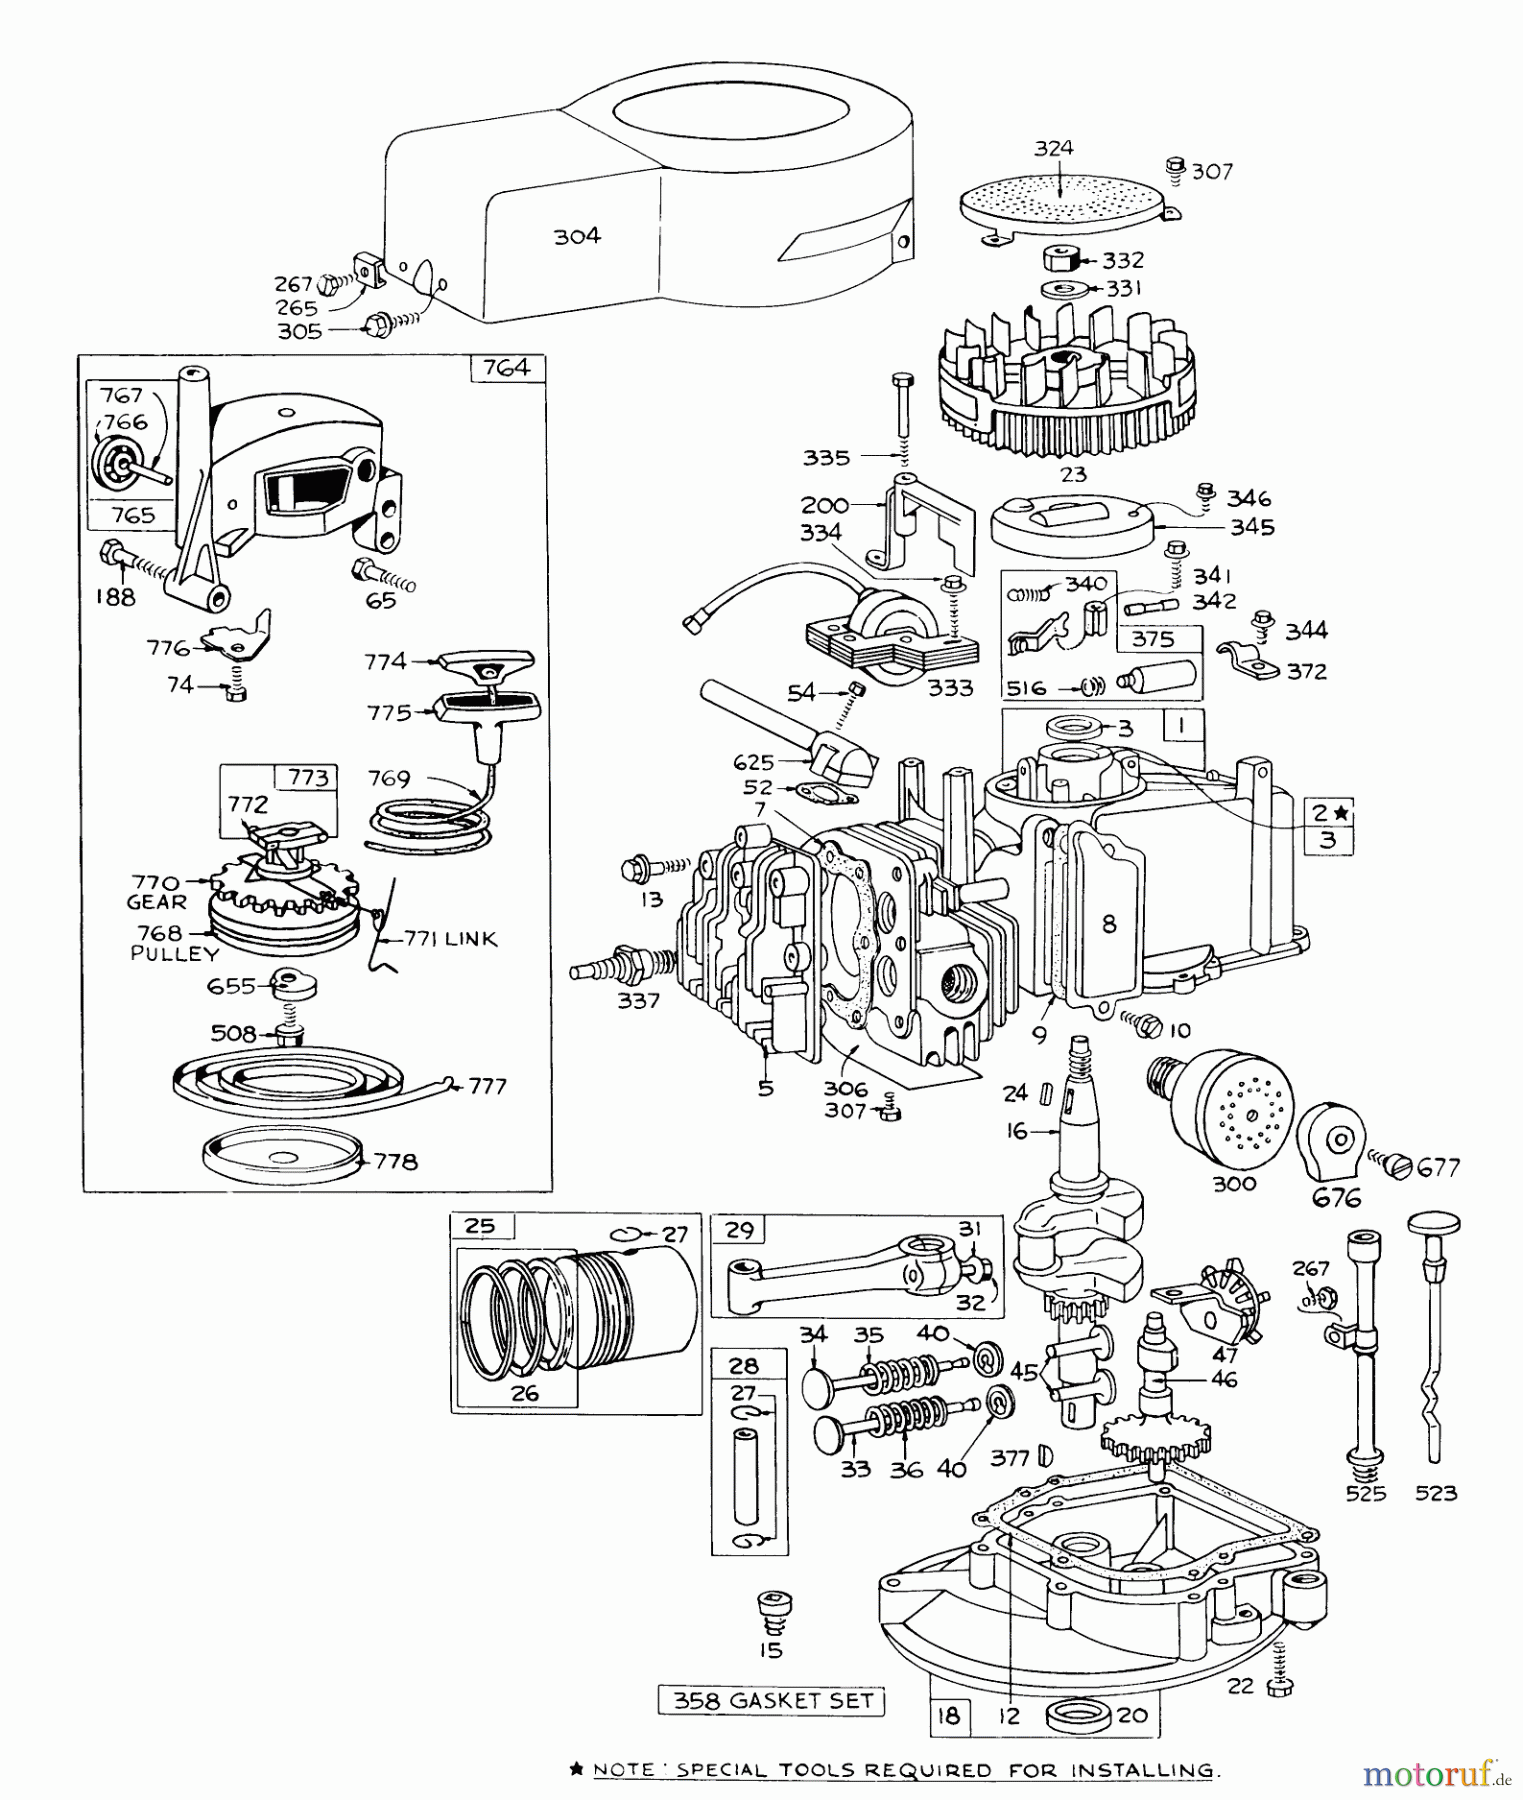  Toro Neu Mowers, Walk-Behind Seite 1 16173 - Toro Whirlwind Lawnmower, 1974 (4000001-4999999) ENGINE BRIGGS & STRATTON-MODEL 92908-1457-01 FOR 21